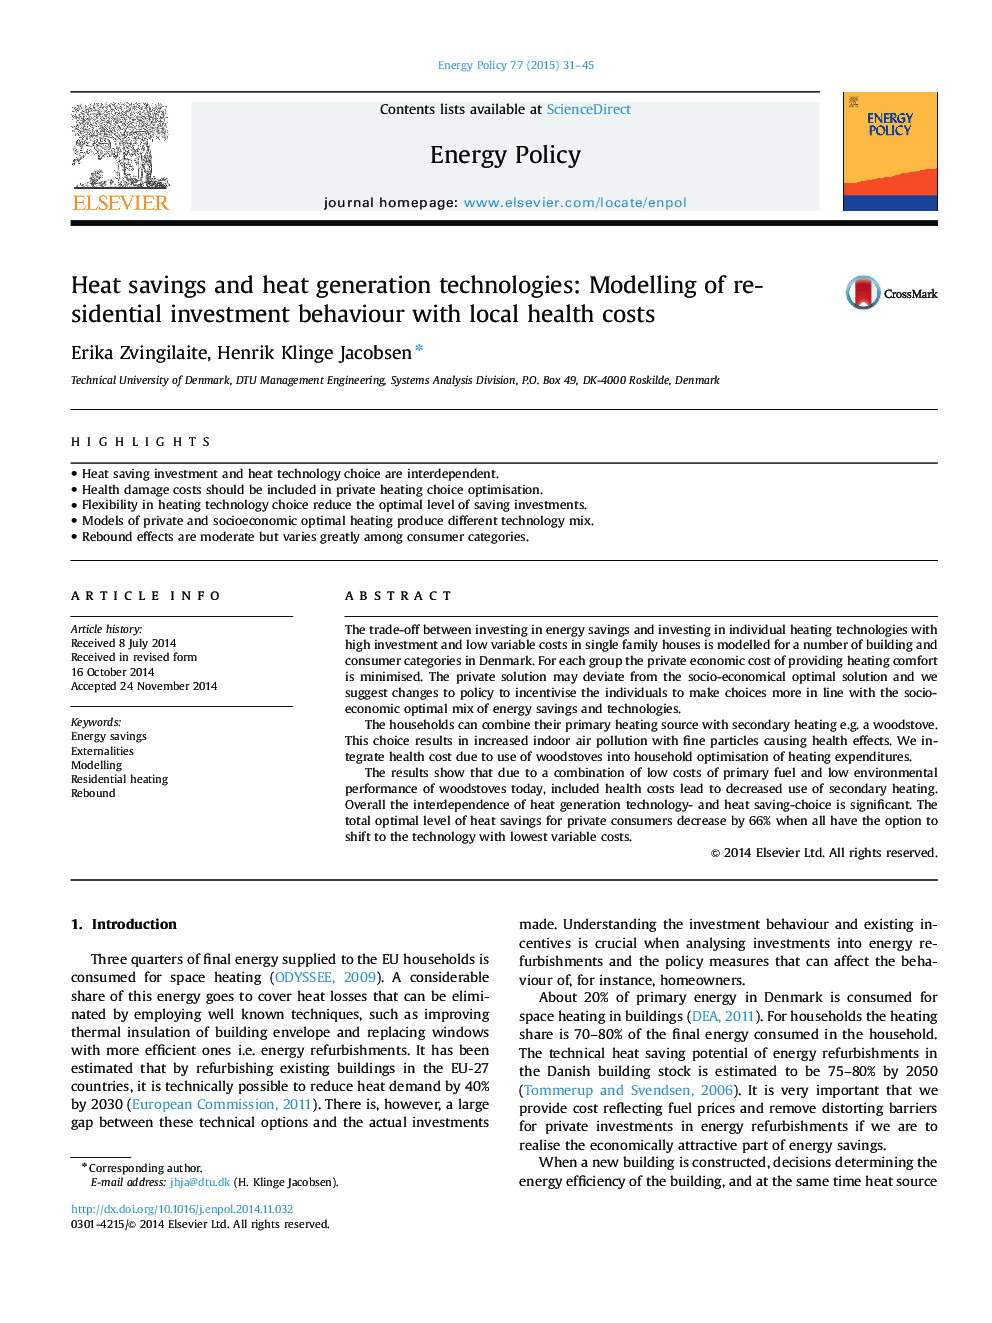 صرفه جویی در حرارت و تکنولوژی های تولید گرما: مدل سازی رفتار سرمایه گذاری مسکونی با هزینه های بهداشت محلی 